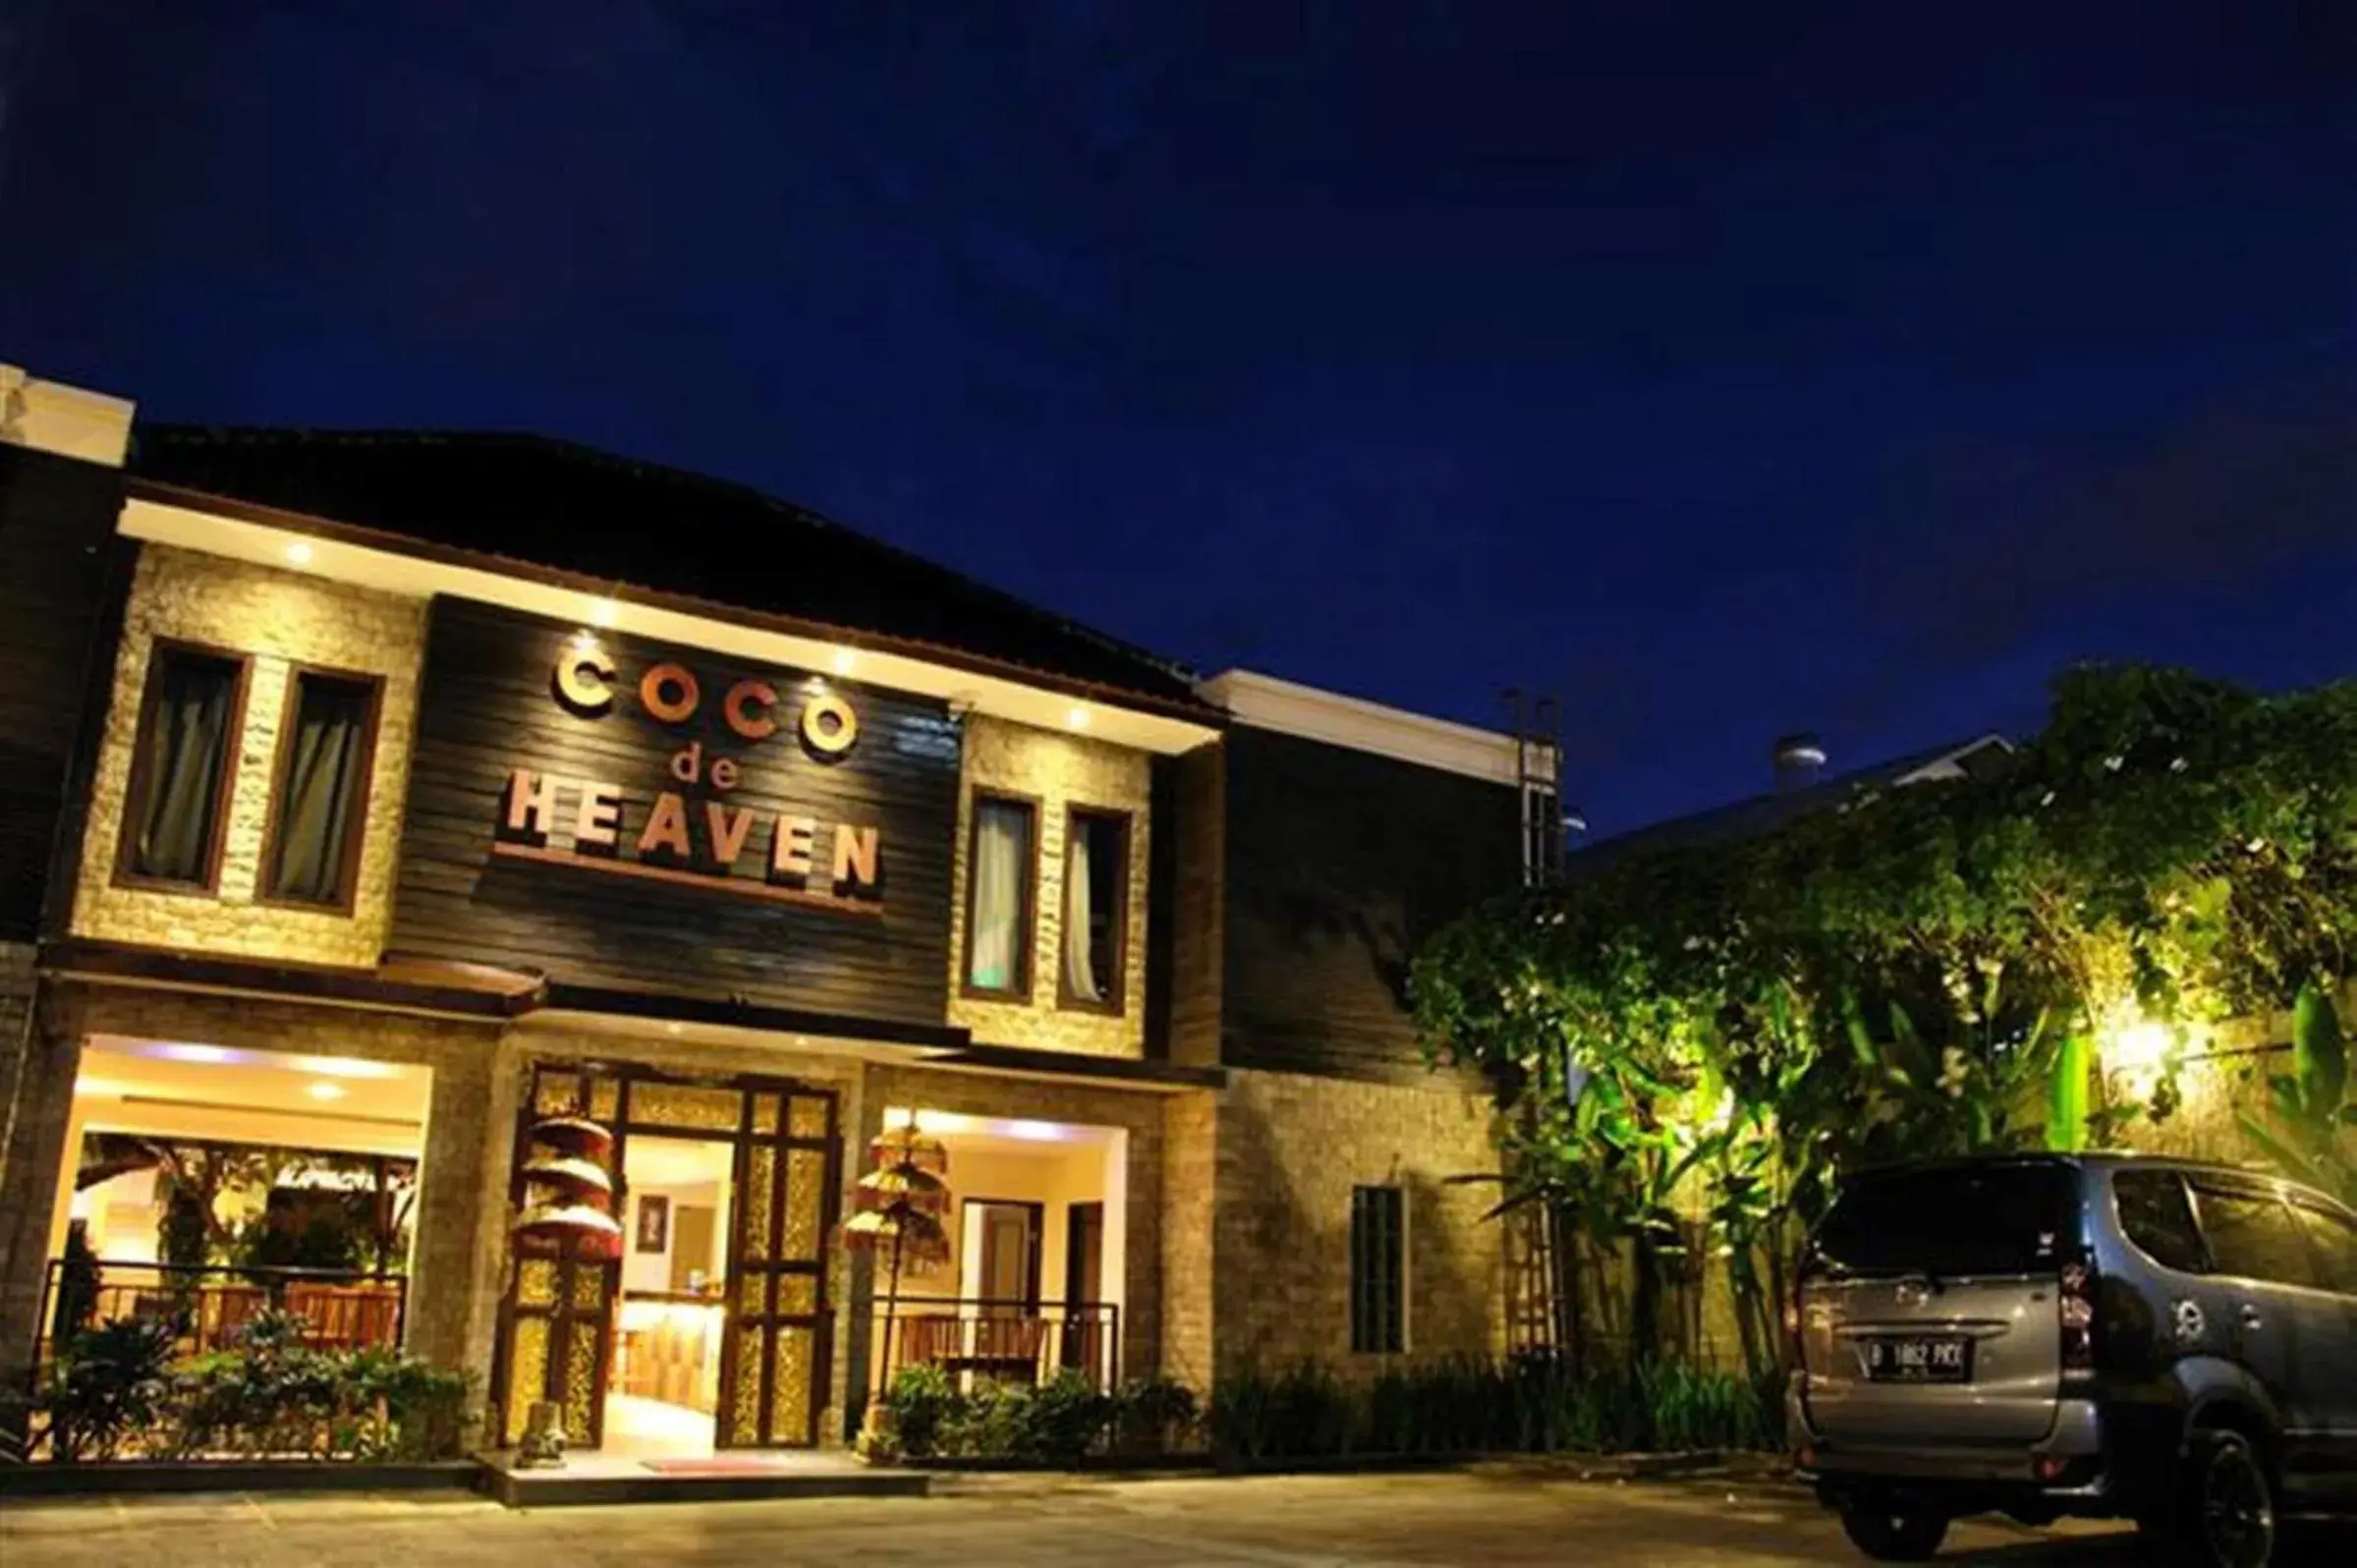 Facade/entrance, Property Building in Coco de Heaven Hotel